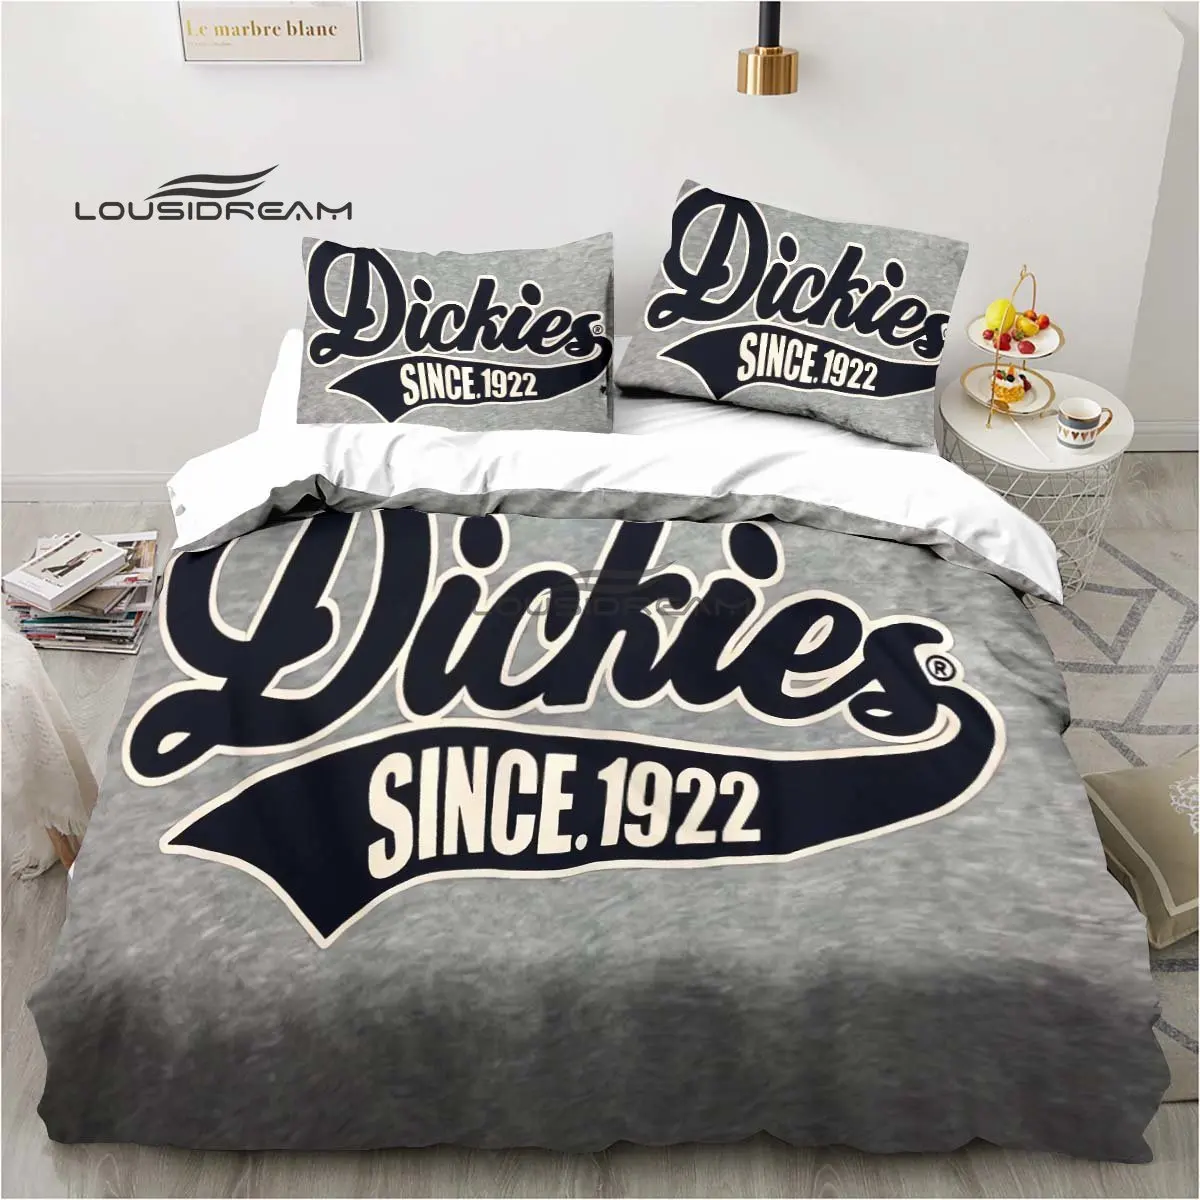 

Комплект постельного белья с 3D-принтом и логотипом Dickies, модное домашнее украшение для отдыха, Комплект постельного белья большого размера для мальчиков и девочек, пододеяльник, наволочки